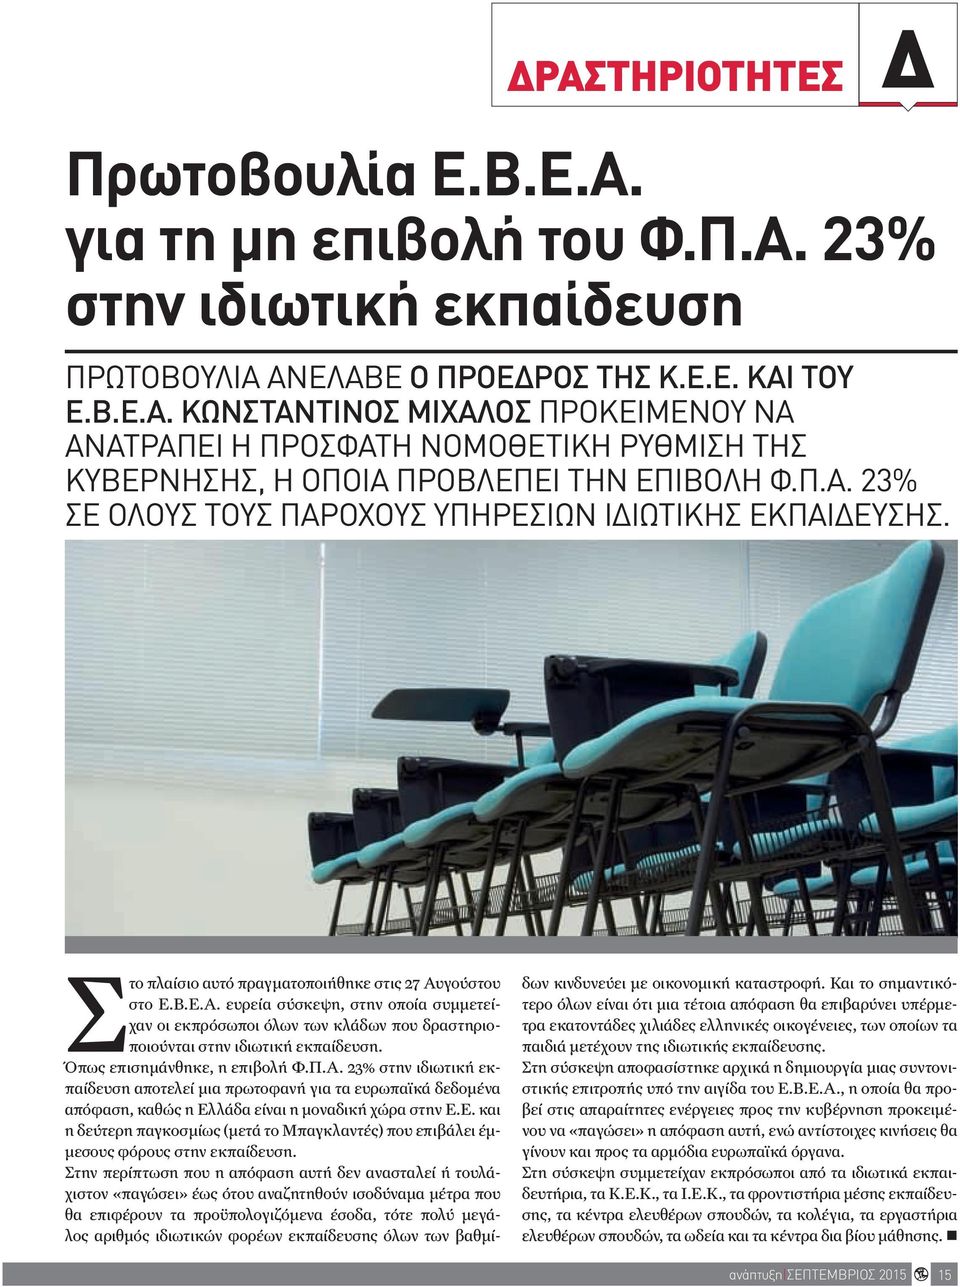 γούστου στο Ε.Β.Ε.Α. ευρεία σύσκεψη, στην οποία συμμετείχαν οι εκπρόσωποι όλων των κλάδων που δραστηριοποιούνται στην ιδιωτική εκπαίδευση. Όπως επισημάνθηκε, η επιβολή Φ.Π.Α. 23% στην ιδιωτική εκπαίδευση αποτελεί μια πρωτοφανή για τα ευρωπαϊκά δεδομένα απόφαση, καθώς η Ελλάδα είναι η μοναδική χώρα στην Ε.